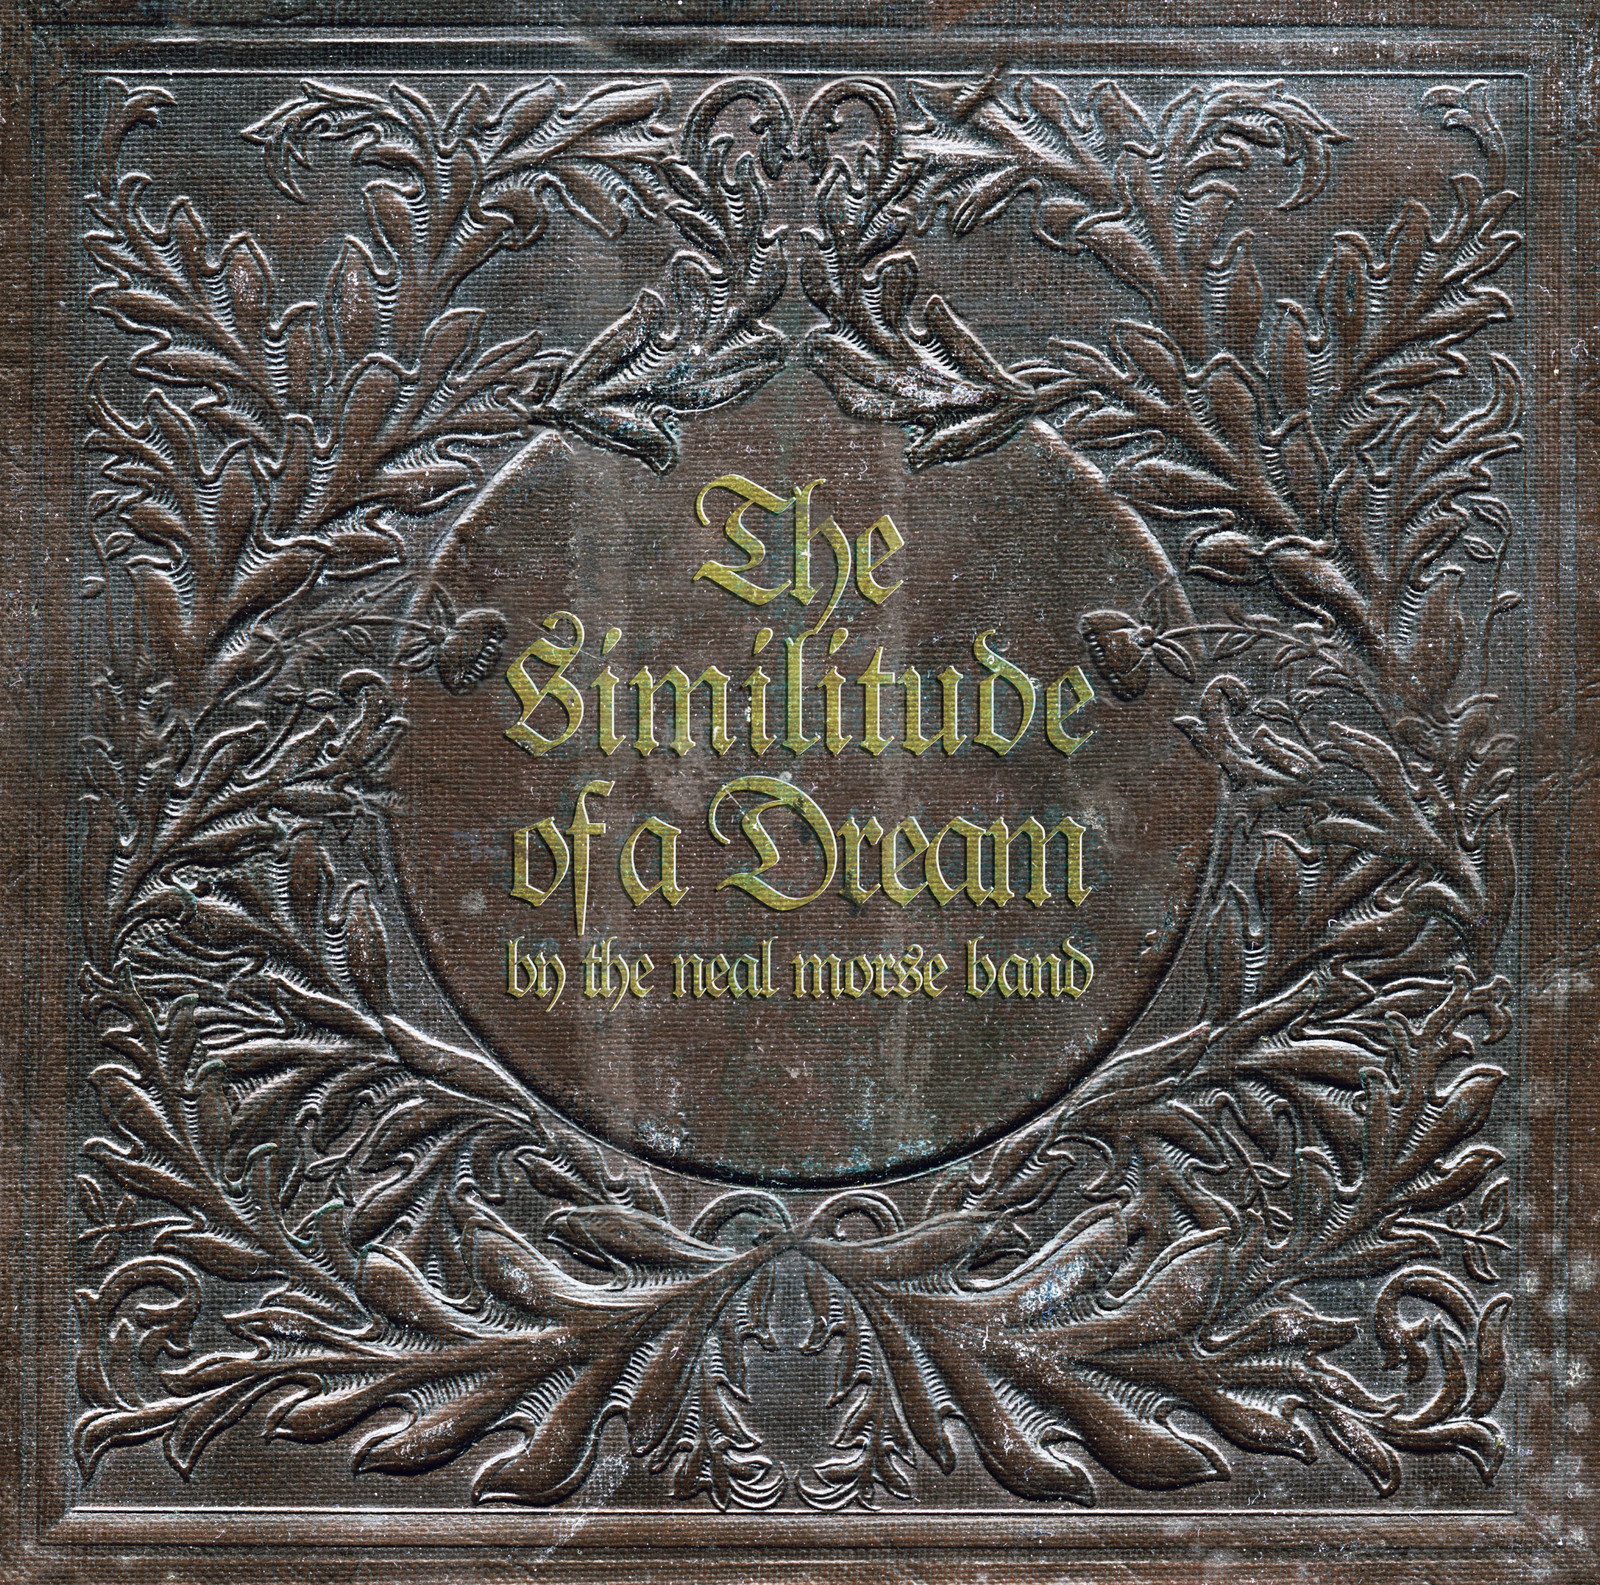 The Neal Morse Band - Similitude of a Dream